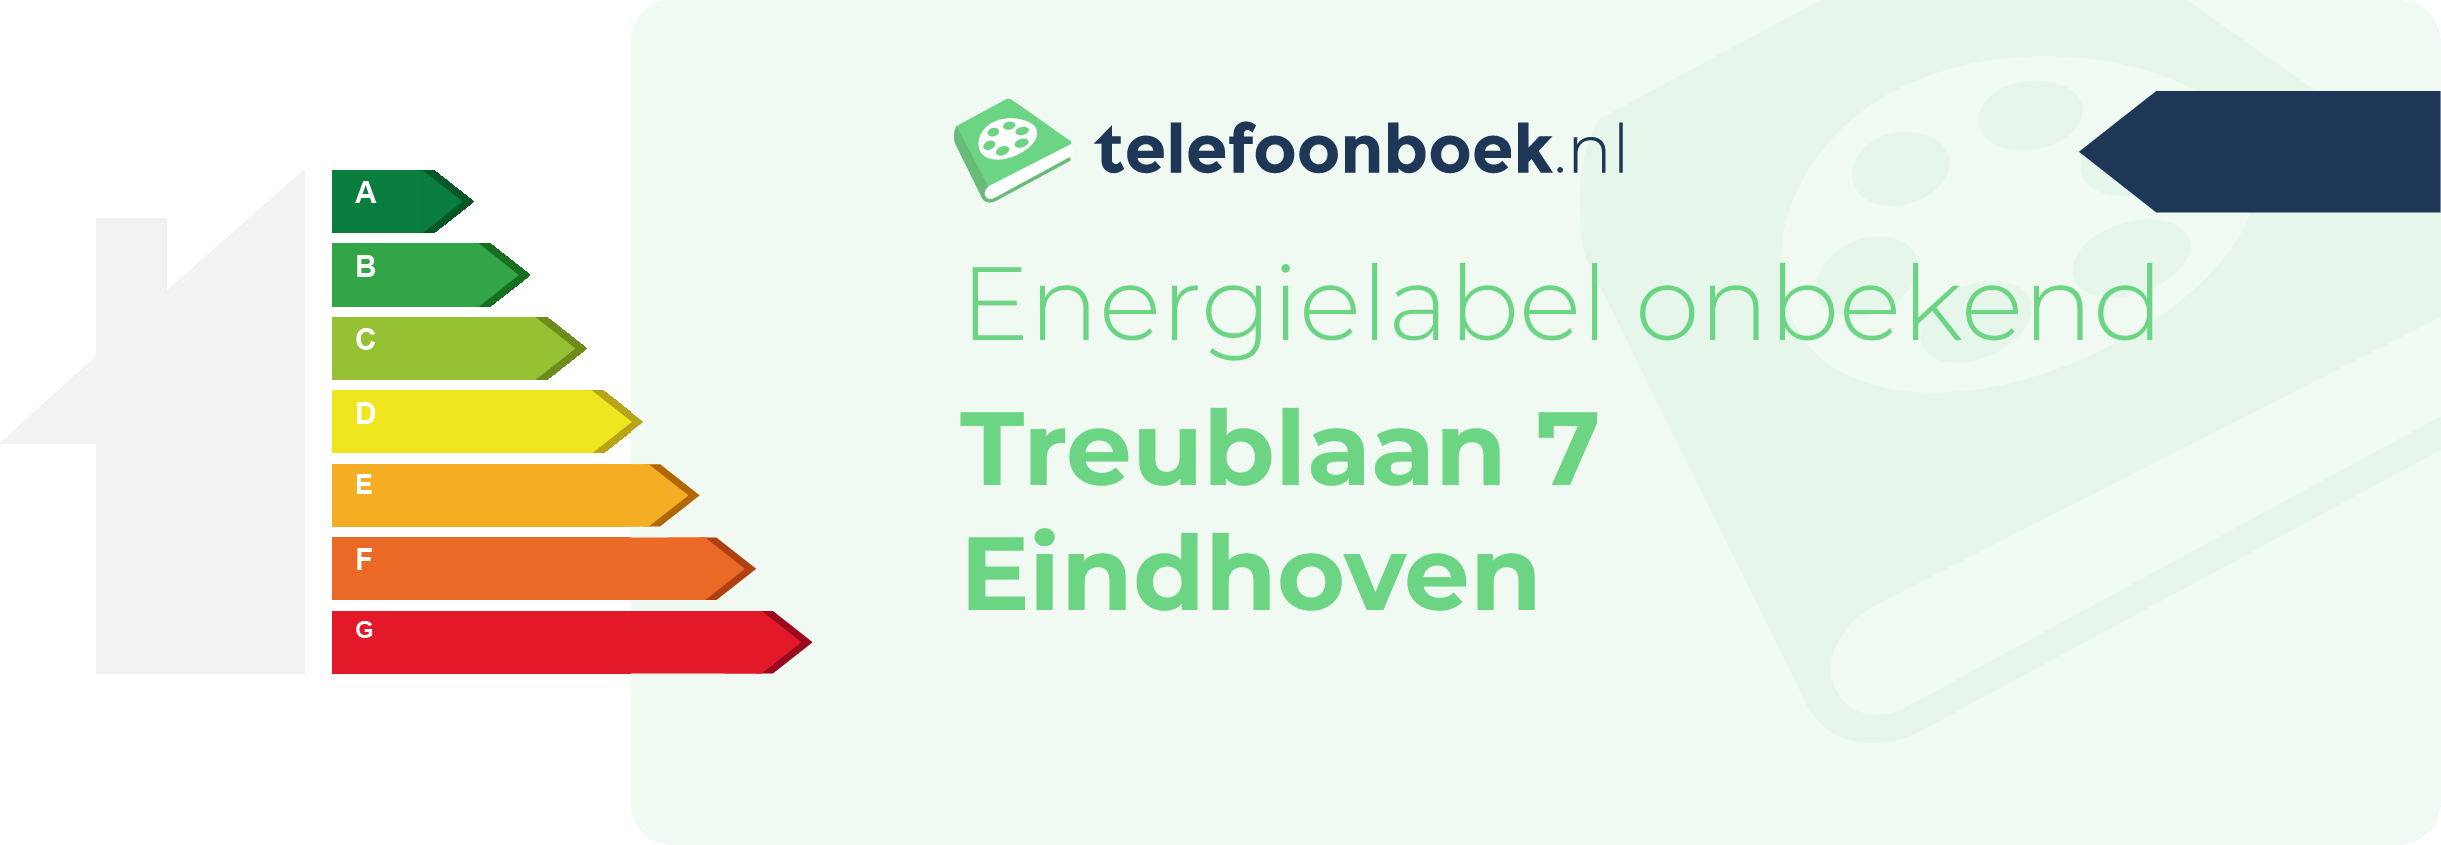 Energielabel Treublaan 7 Eindhoven